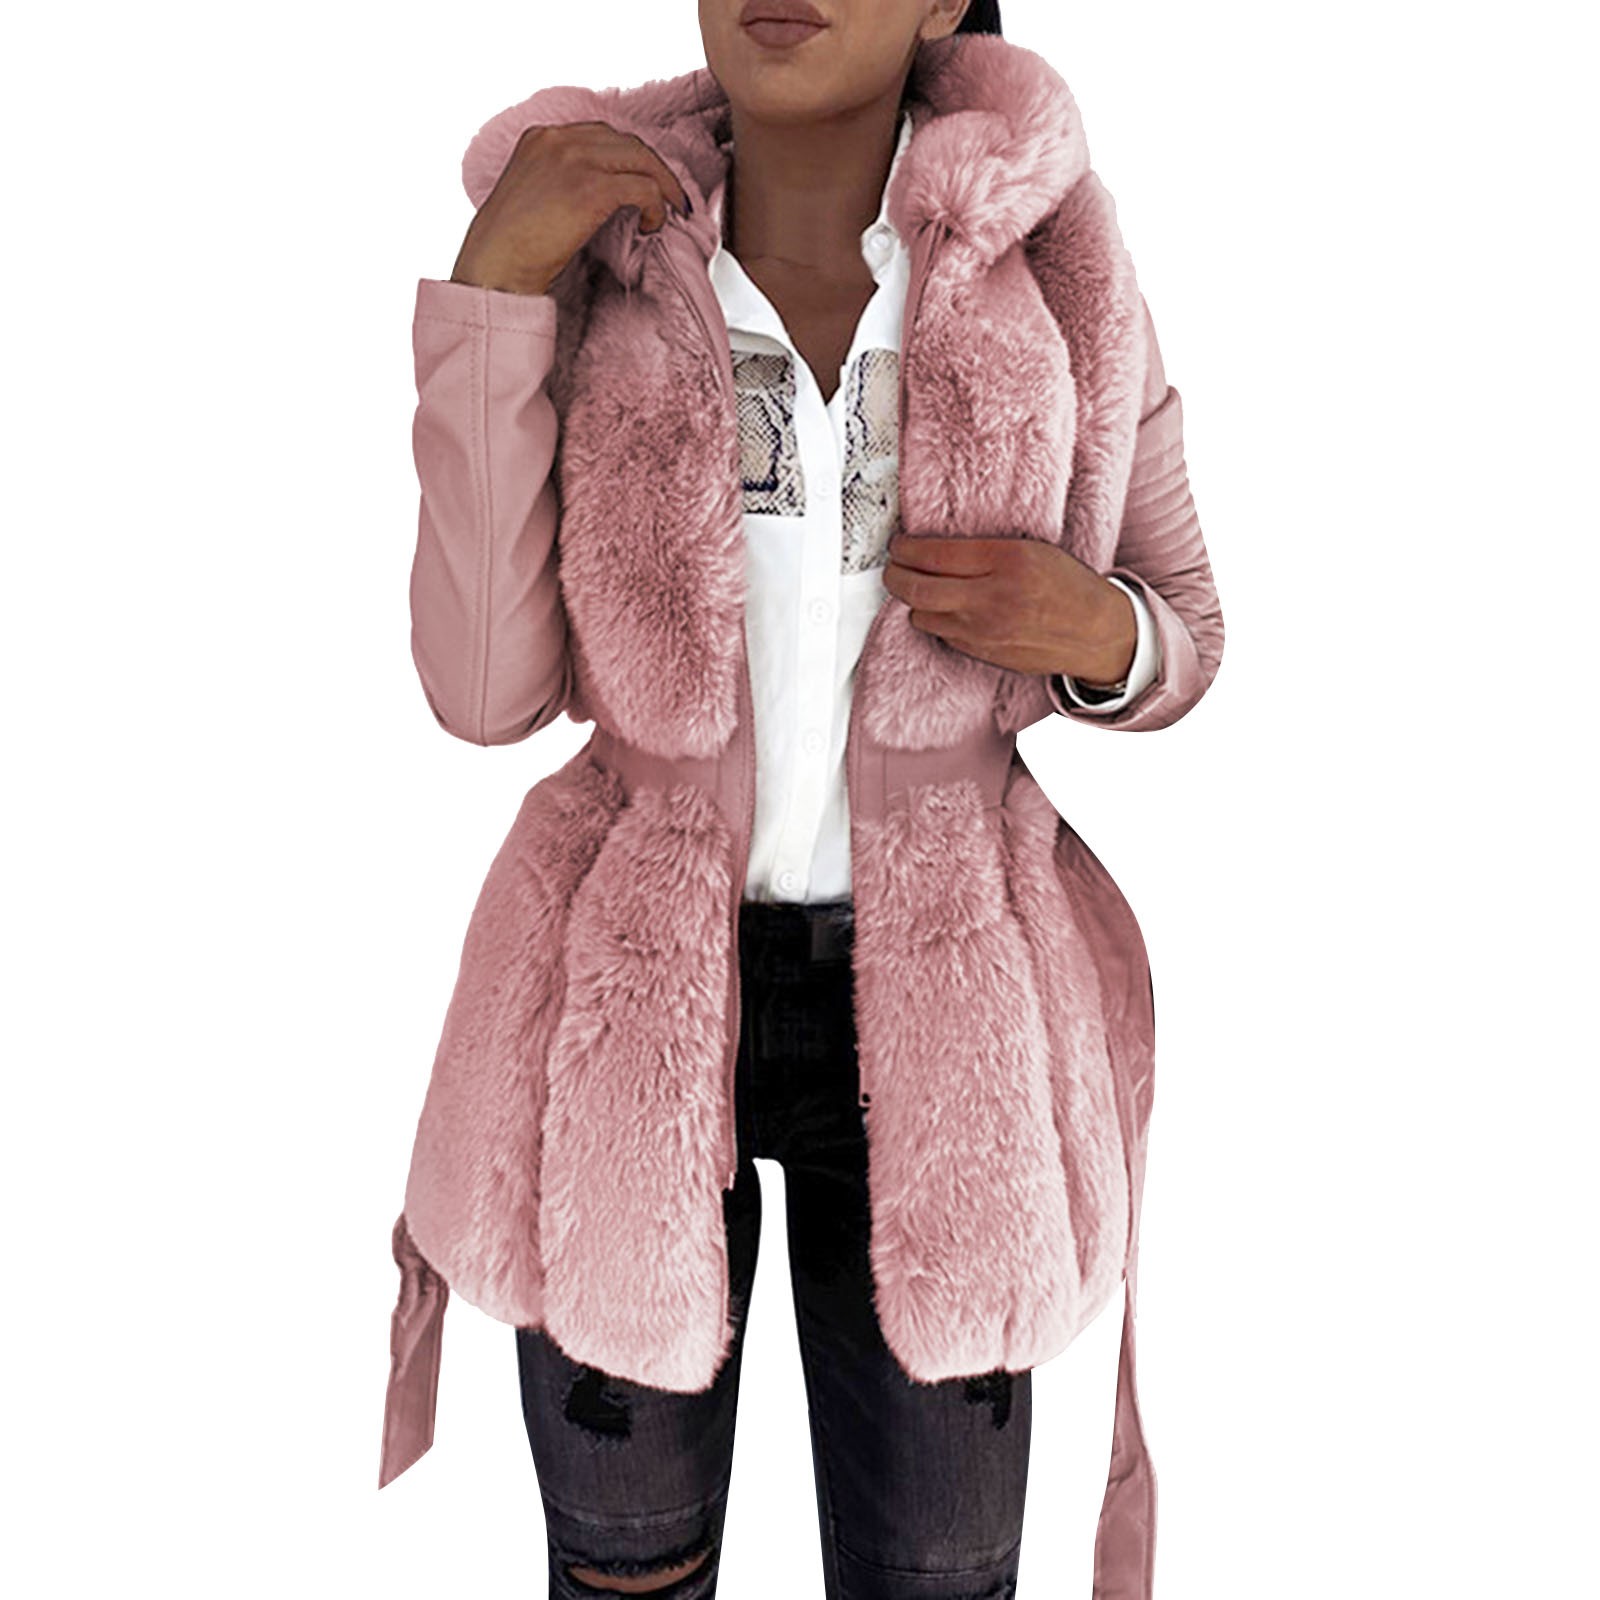 ジップフリースジャケット付き女性のパーカーコート温かい基本的なフード付きジャケットフードぬいぐるみジャケットと女性パーカー